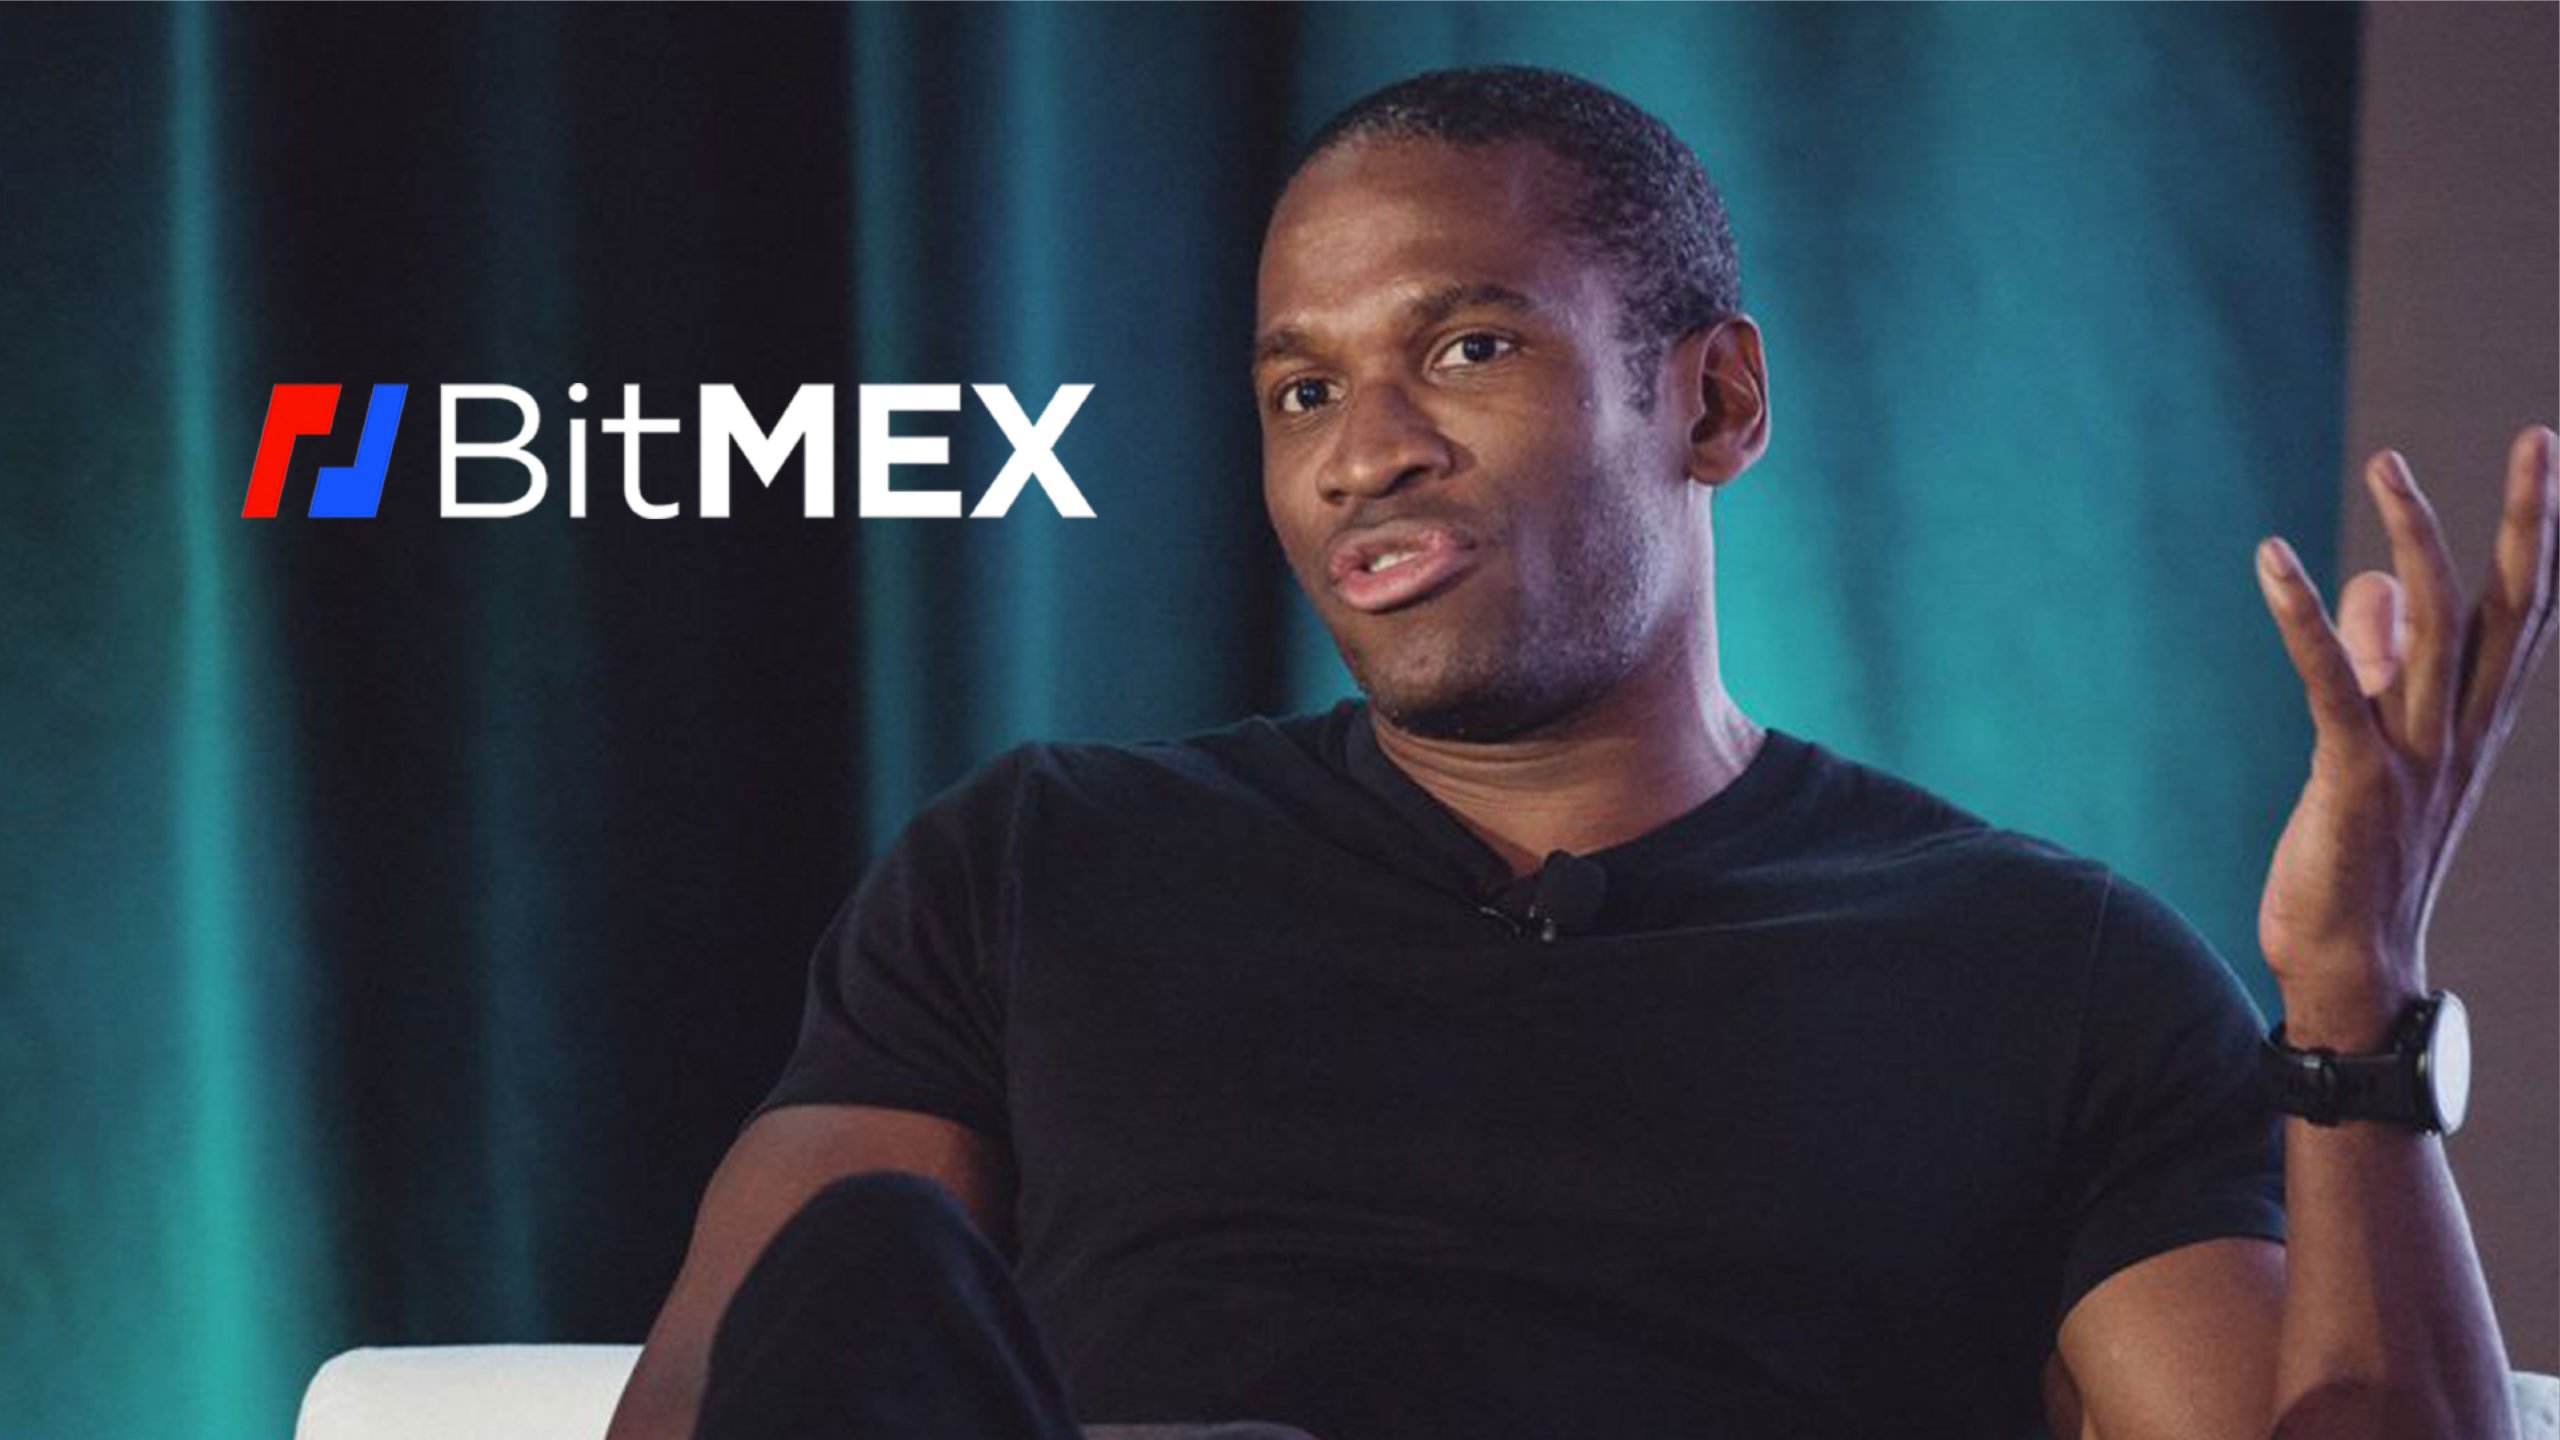 CEO-ul BitMEX, Arthur Hayes, a vorbit despre previziunile făcute că va exista o criză financiară majoră în următorul deceniu